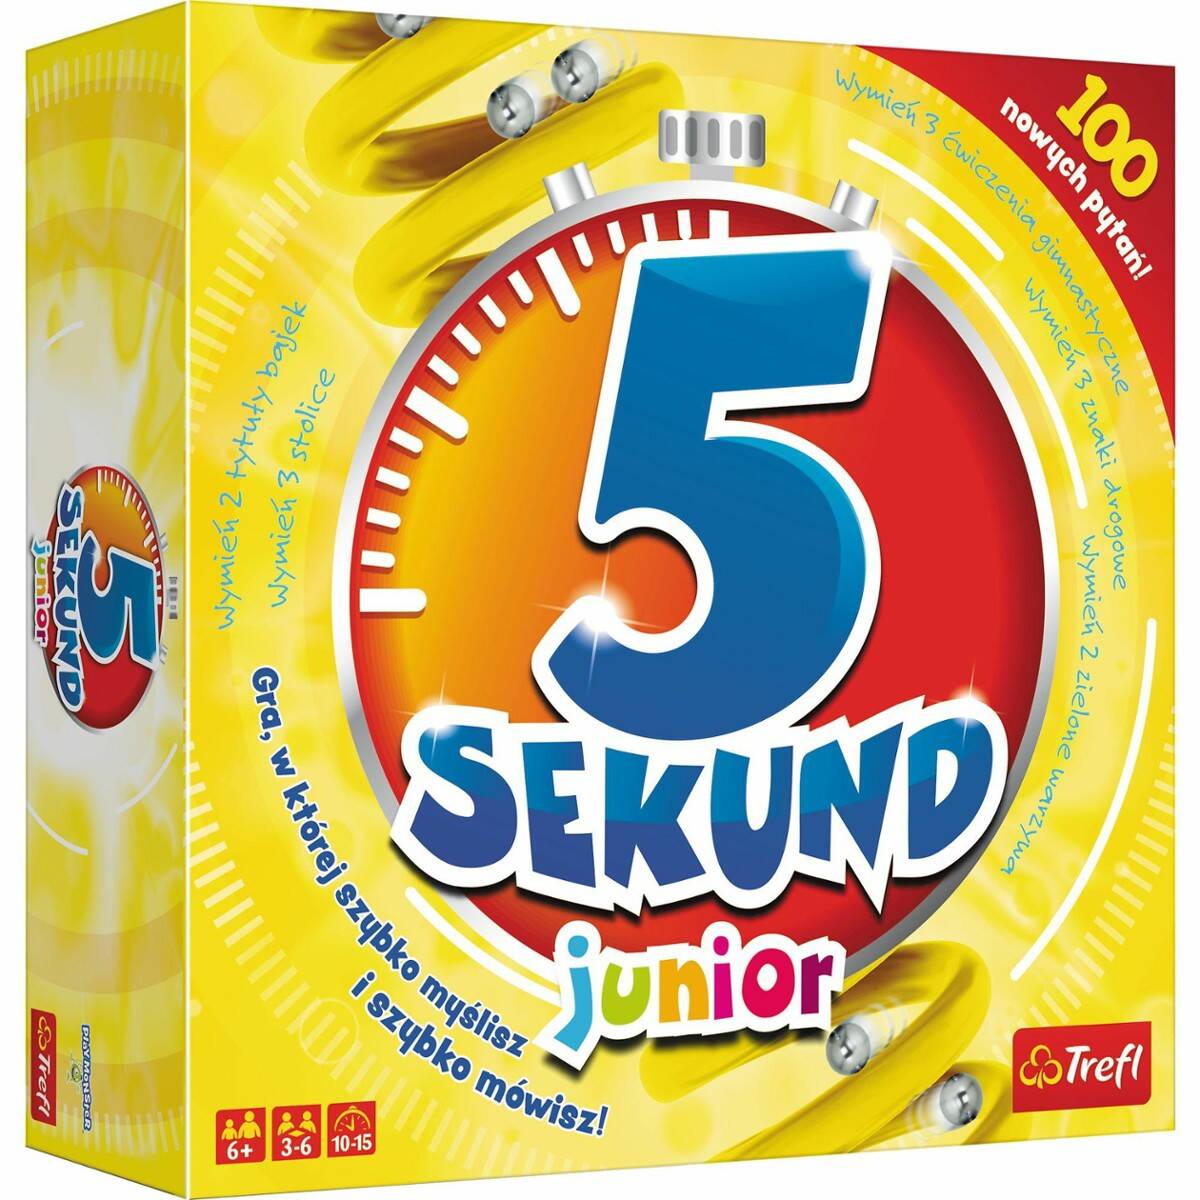 TREFL 5 sekund junior gra edycja 2019